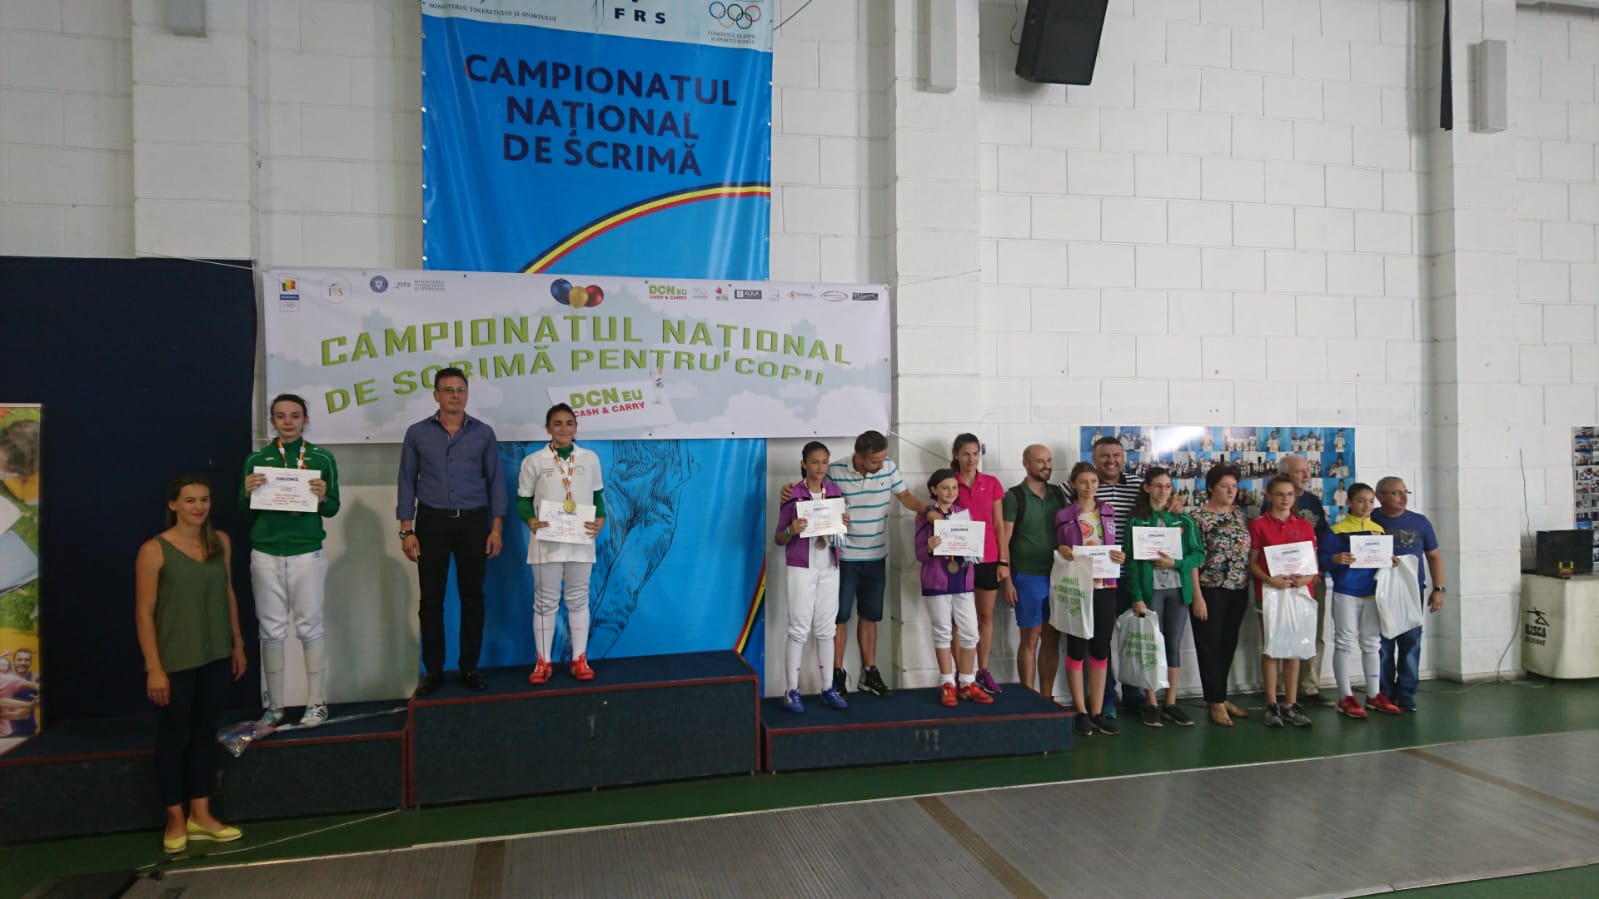 Andreea Dincă (ACS Balestra) a câștigat Campionatul Național de scrimă pentru copii de la București, ediția 2018, în proba de floretă feminin, la categoria 12-13 ani